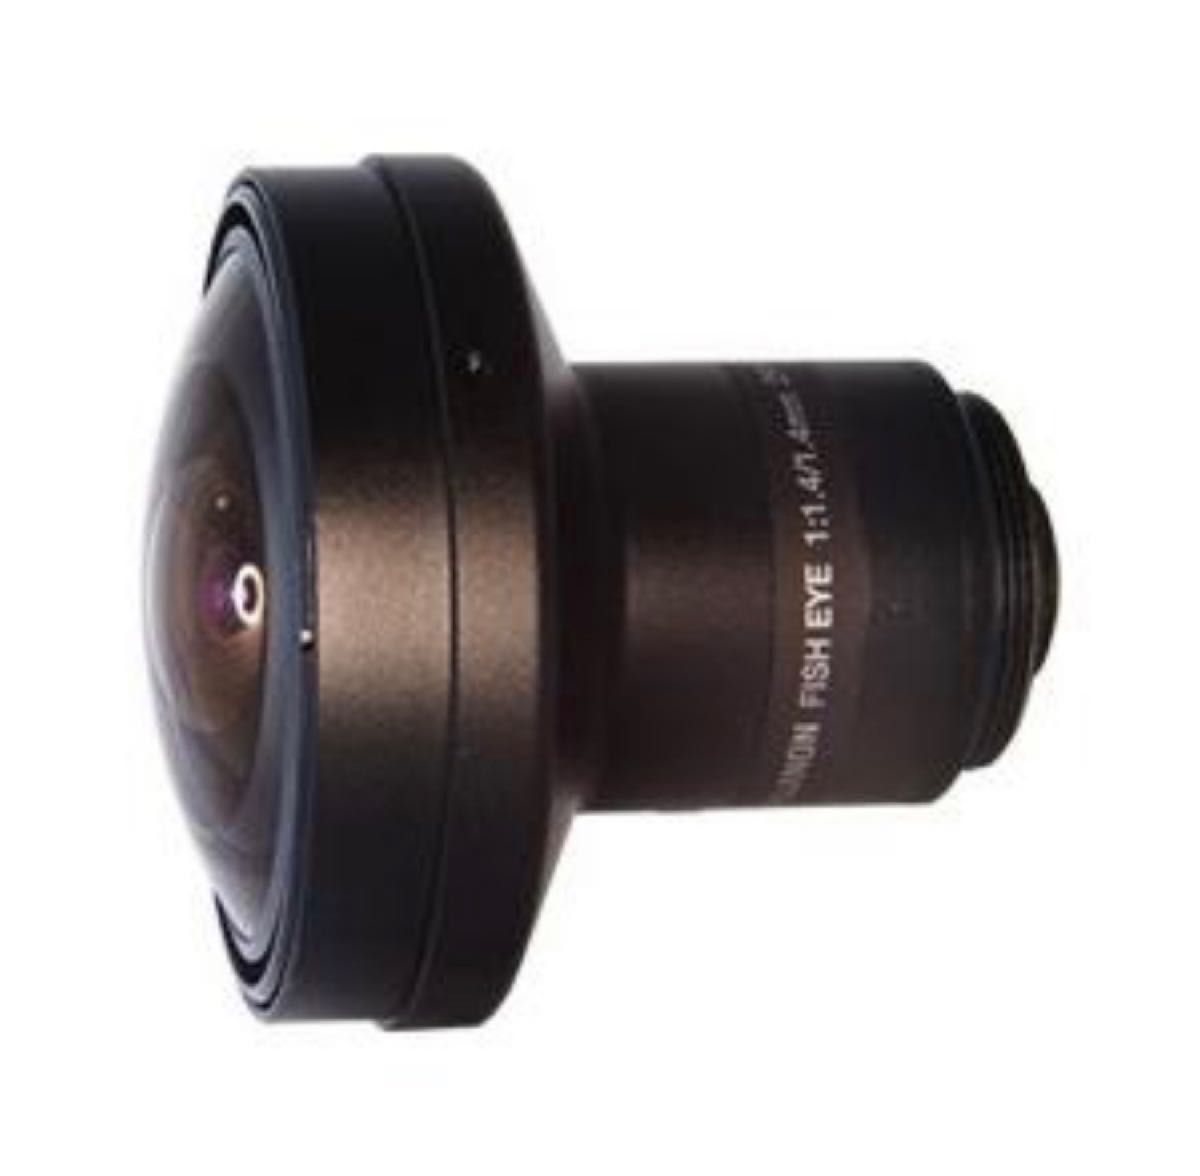 10個セット FUJIFILM DF1.4HC-L1 1.4 mm 1/2"Cマウント MP(メガピクセル)対応 魚眼レンズ